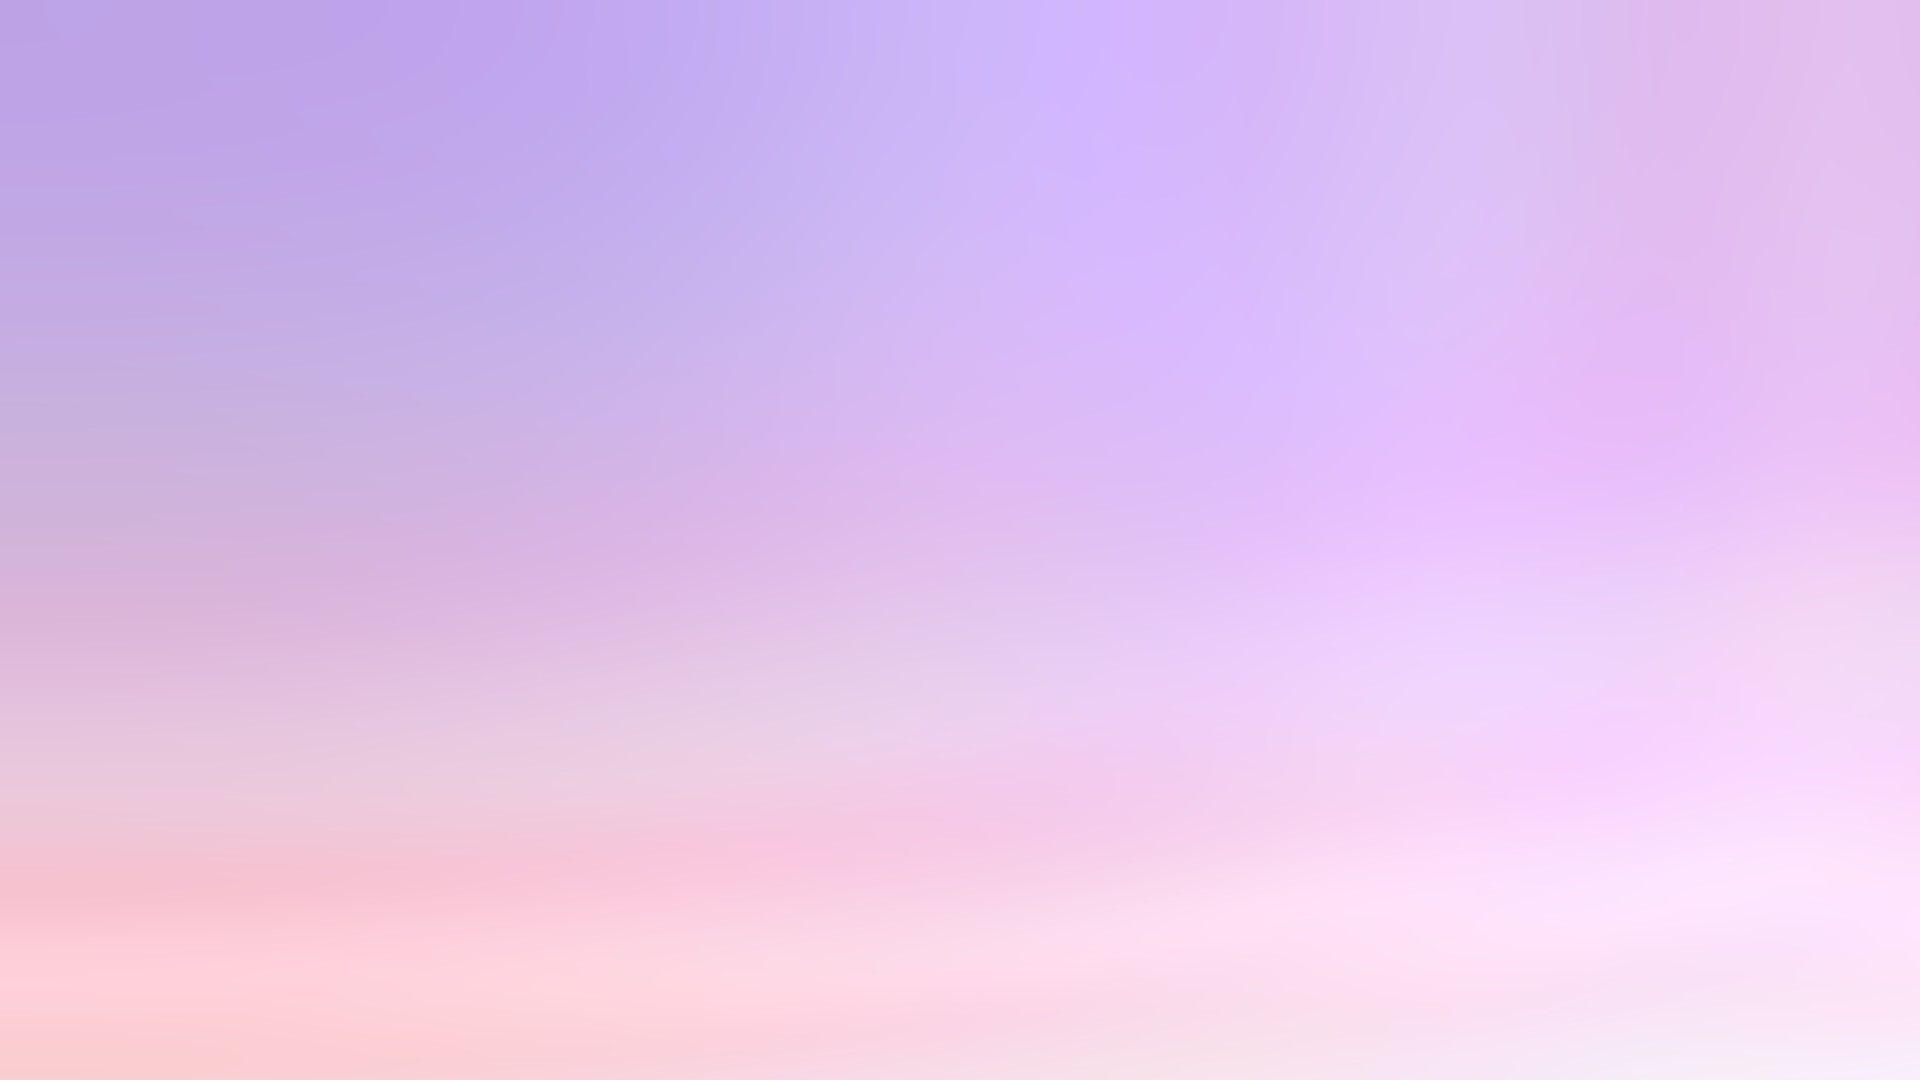 Hình nền desktop màu tím nhạt sẽ mang lại sự tươi mới và trẻ trung cho máy tính của bạn. Với gam màu nhẹ nhàng, hình nền này sẽ mang lại cho bạn cảm giác thư giãn và yên tĩnh trong cuộc sống. Hãy thưởng thức bức hình đẹp này và cảm nhận tinh thần mới mẻ mà nó mang lại!